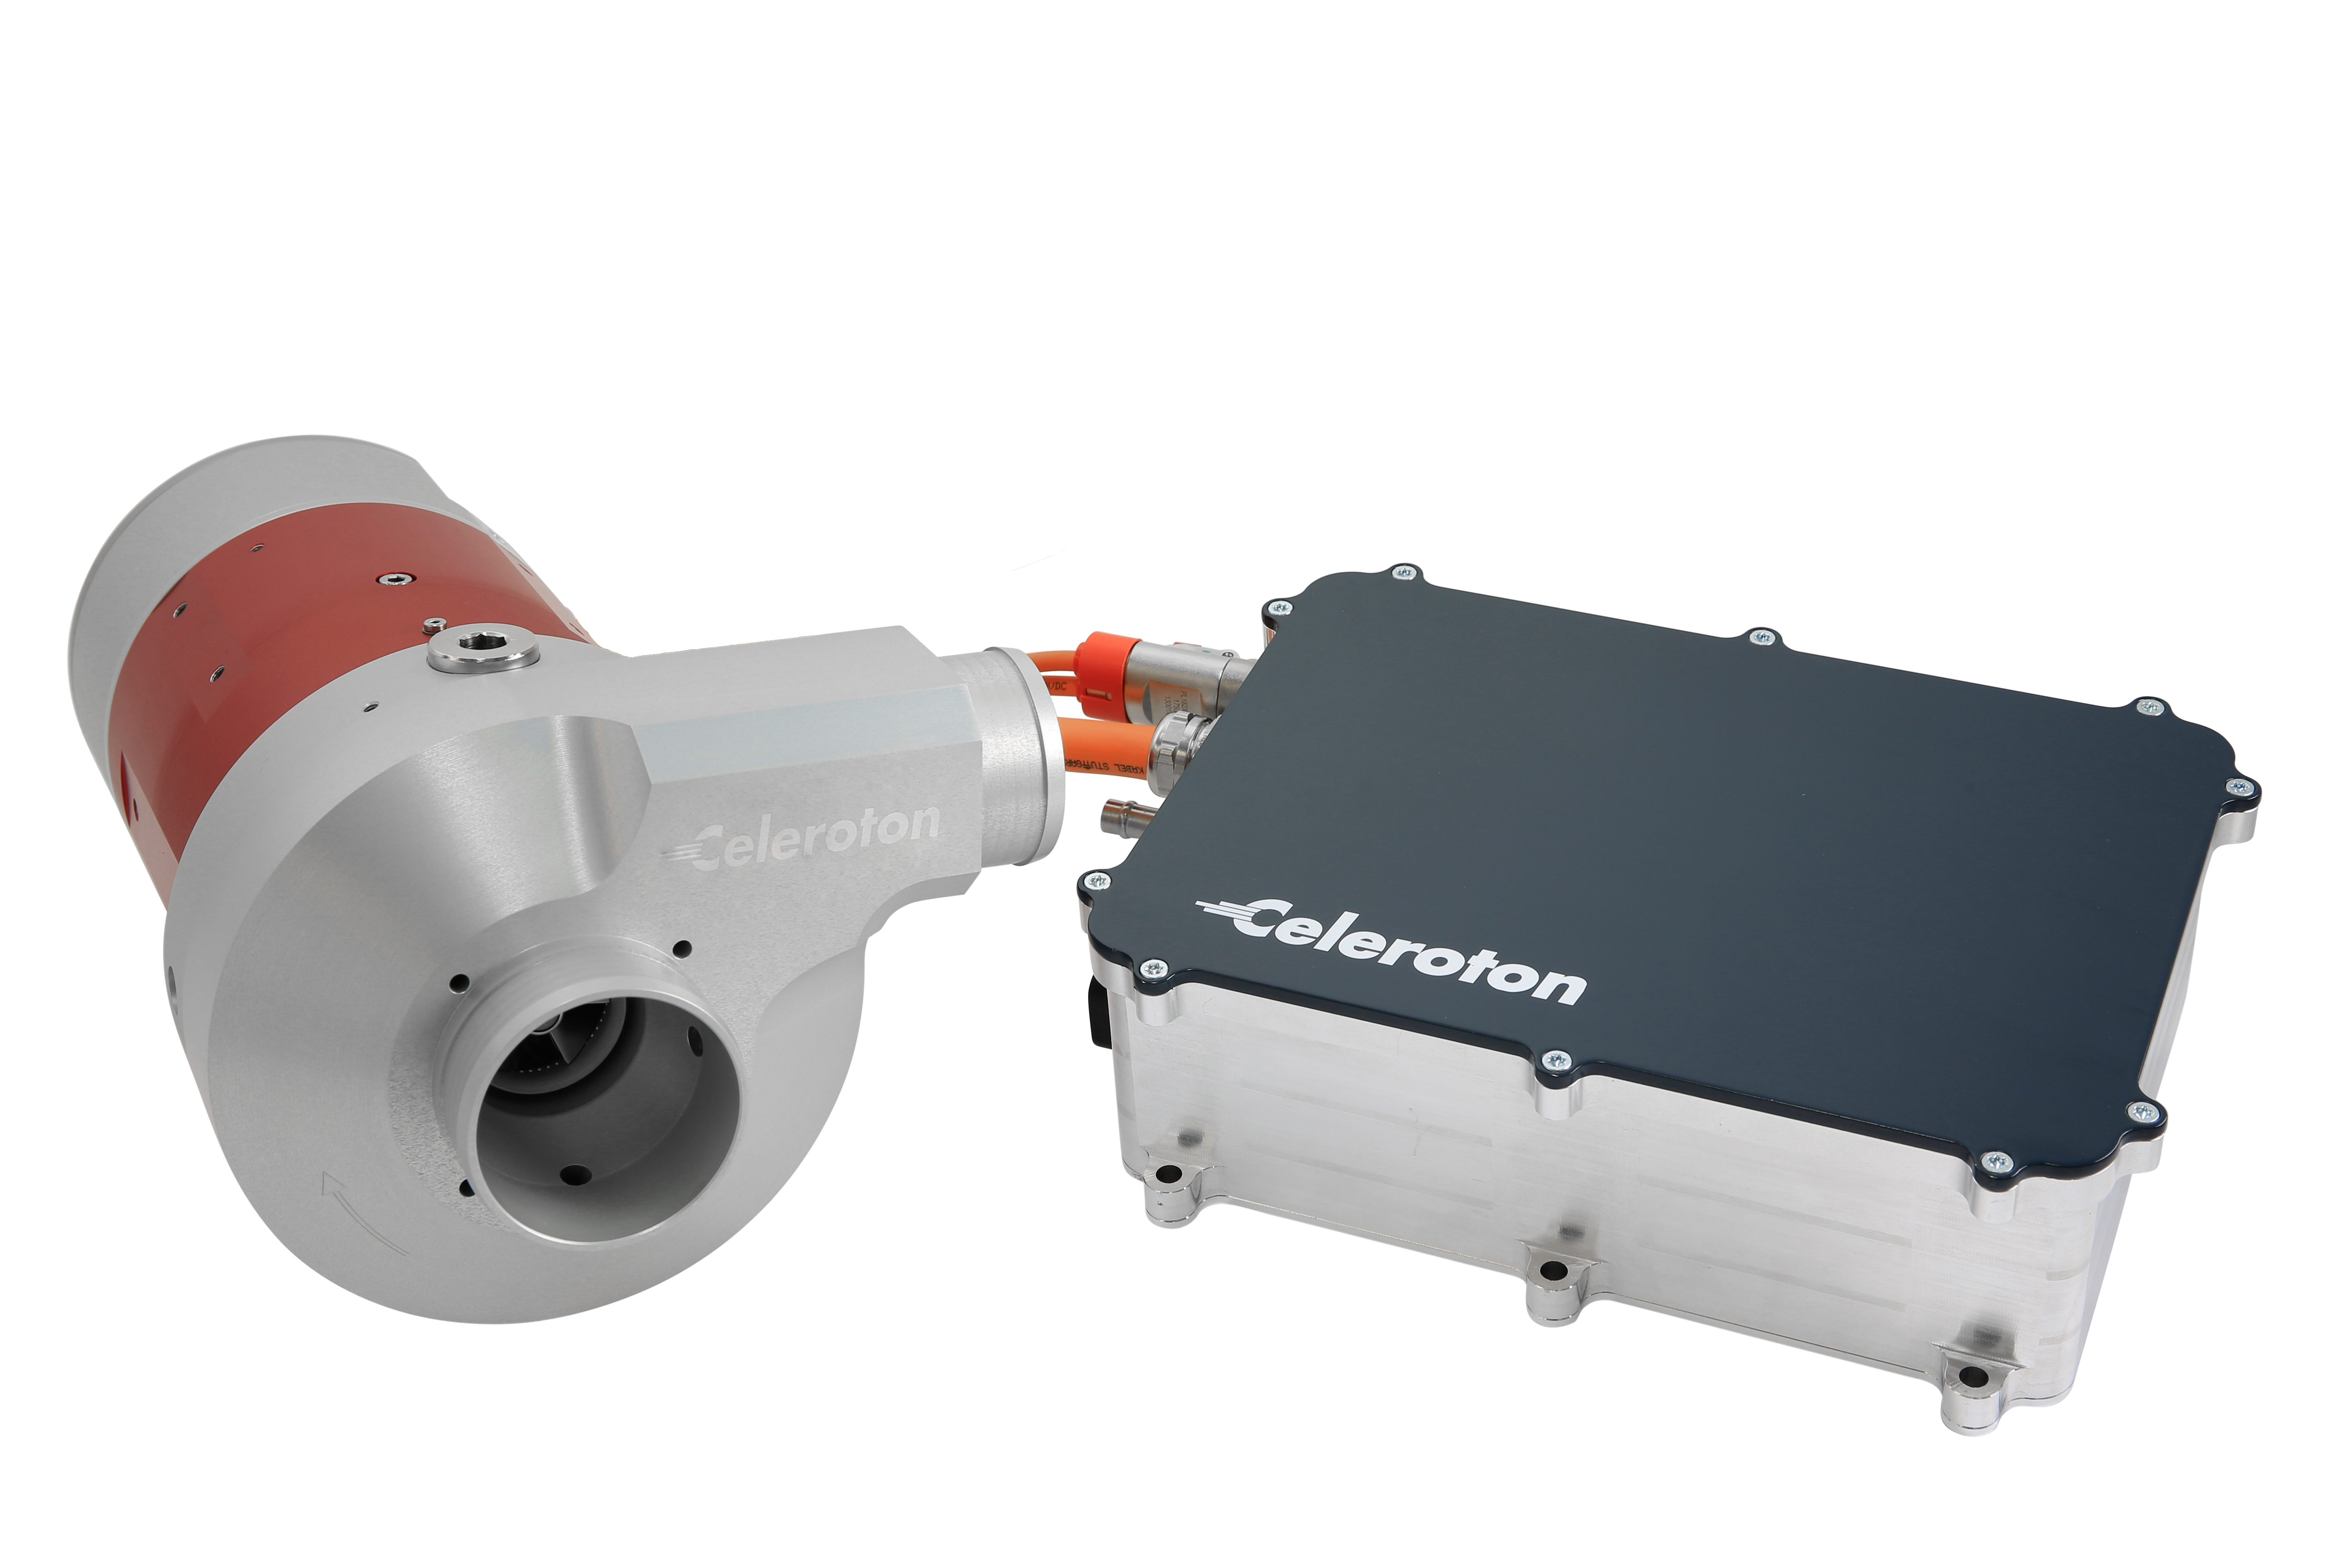 Turbokompressor CT-22 mit Umrichter CC5500-7500 für sensorlose Regelung